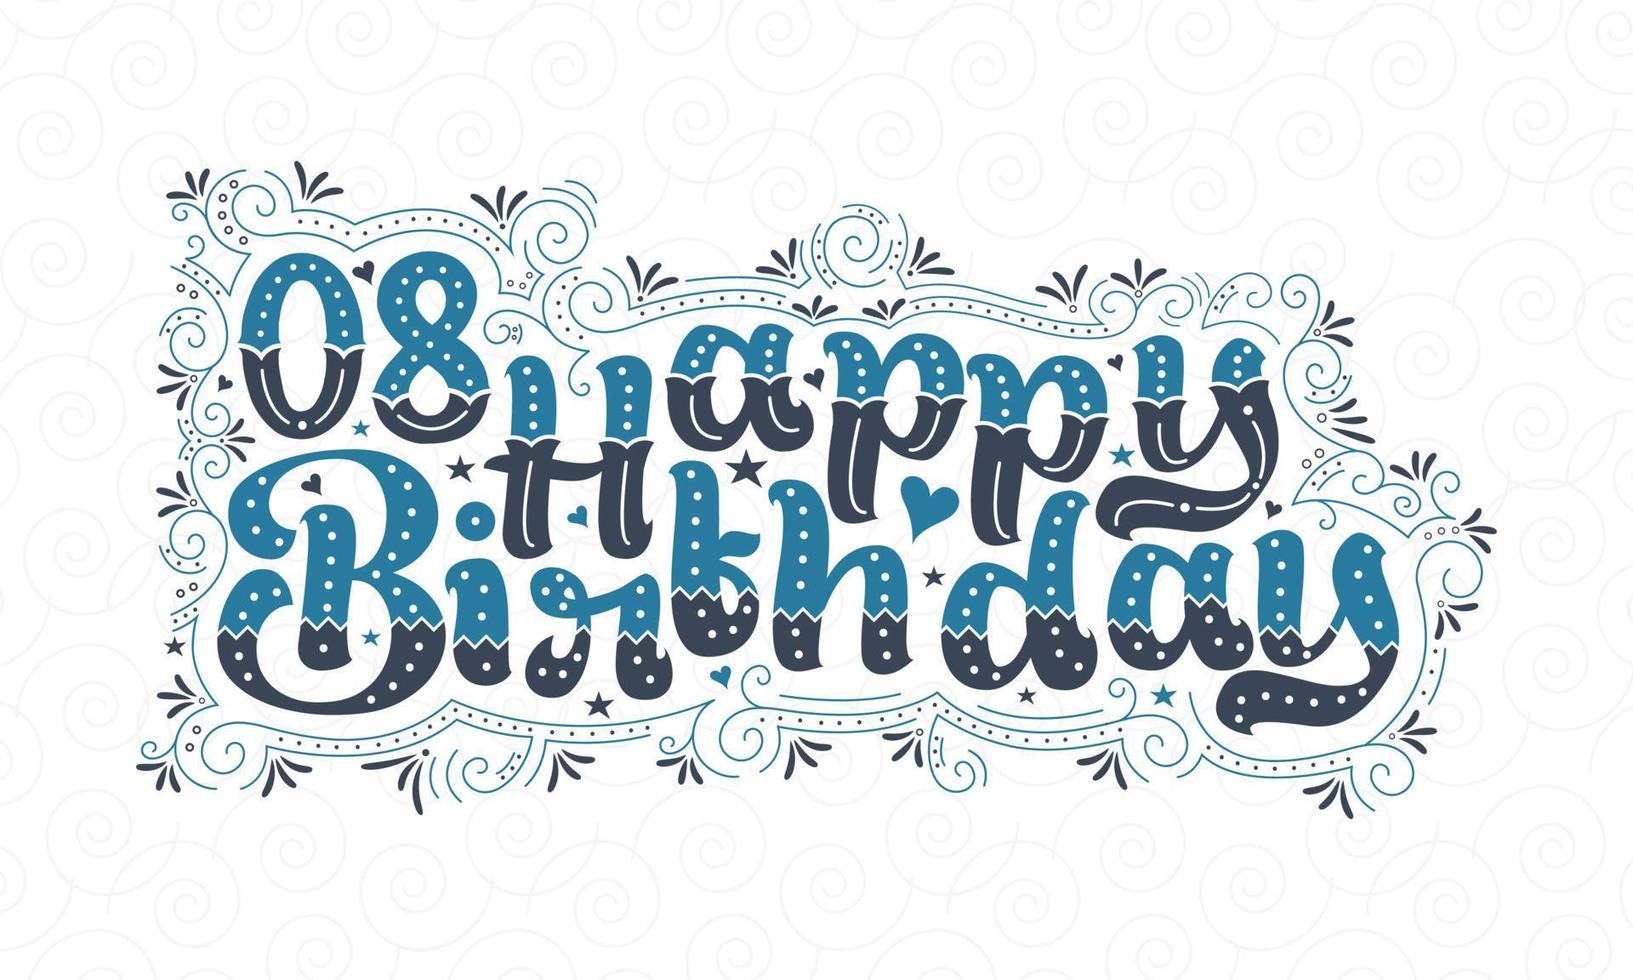 8e gelukkige verjaardag belettering, 8 jaar verjaardag mooi typografieontwerp met blauwe en zwarte stippen, lijnen en bladeren. vector